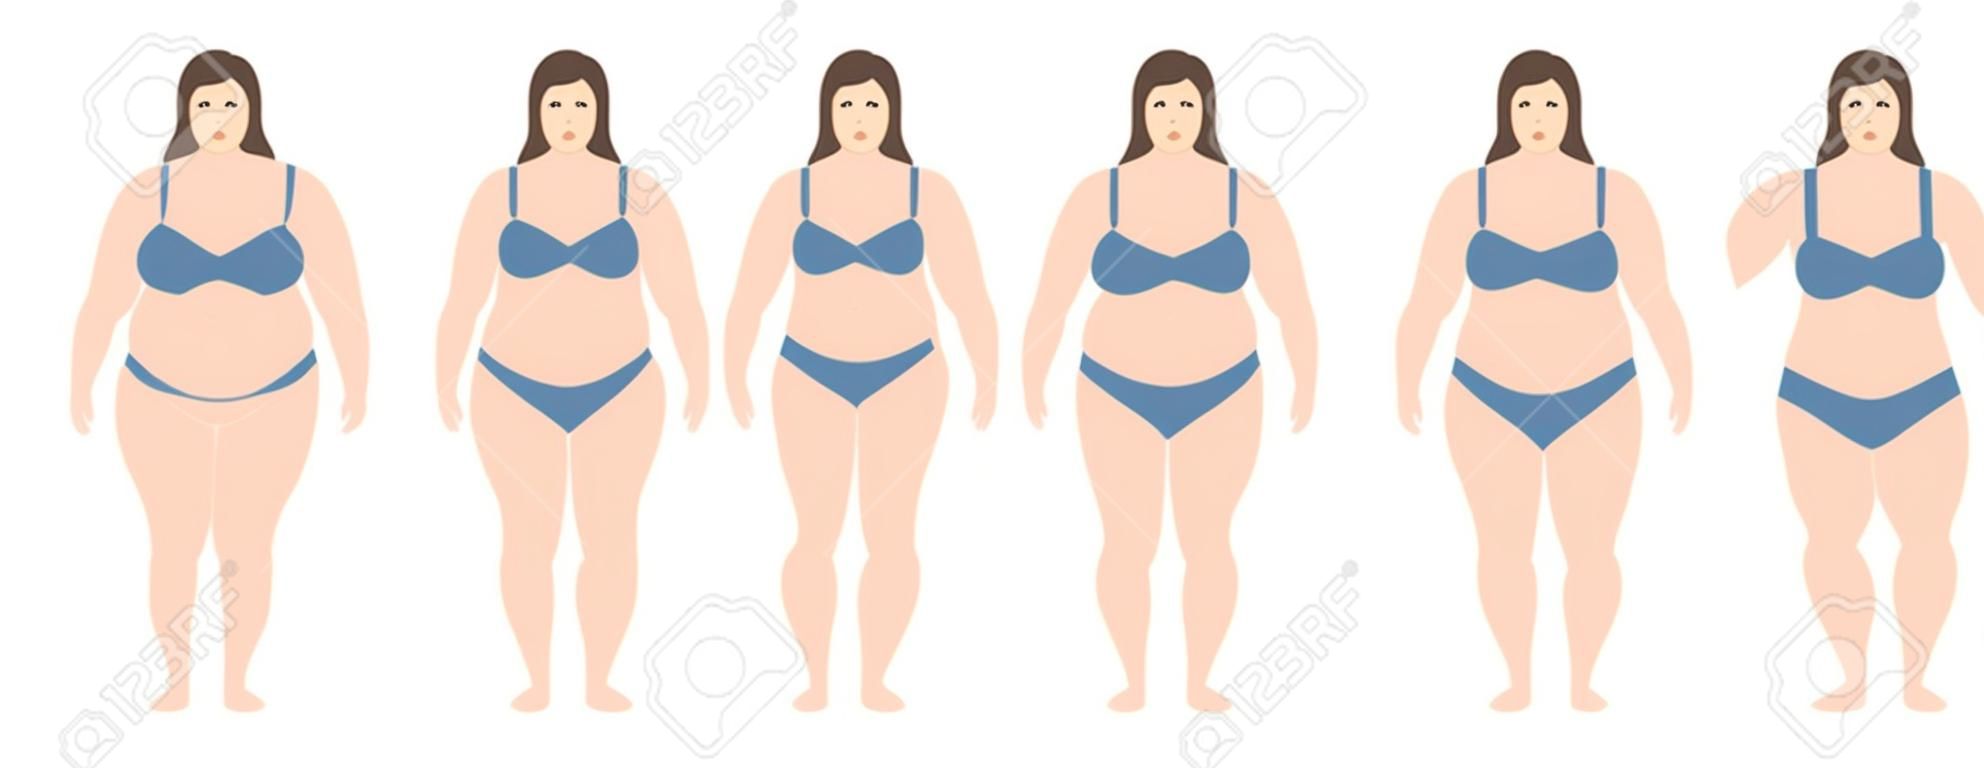 Una illustrazione vettoriale di donne con peso diverso dall'anoressia all'estremo obeso. Indice di massa corporea, concetto di perdita di peso.